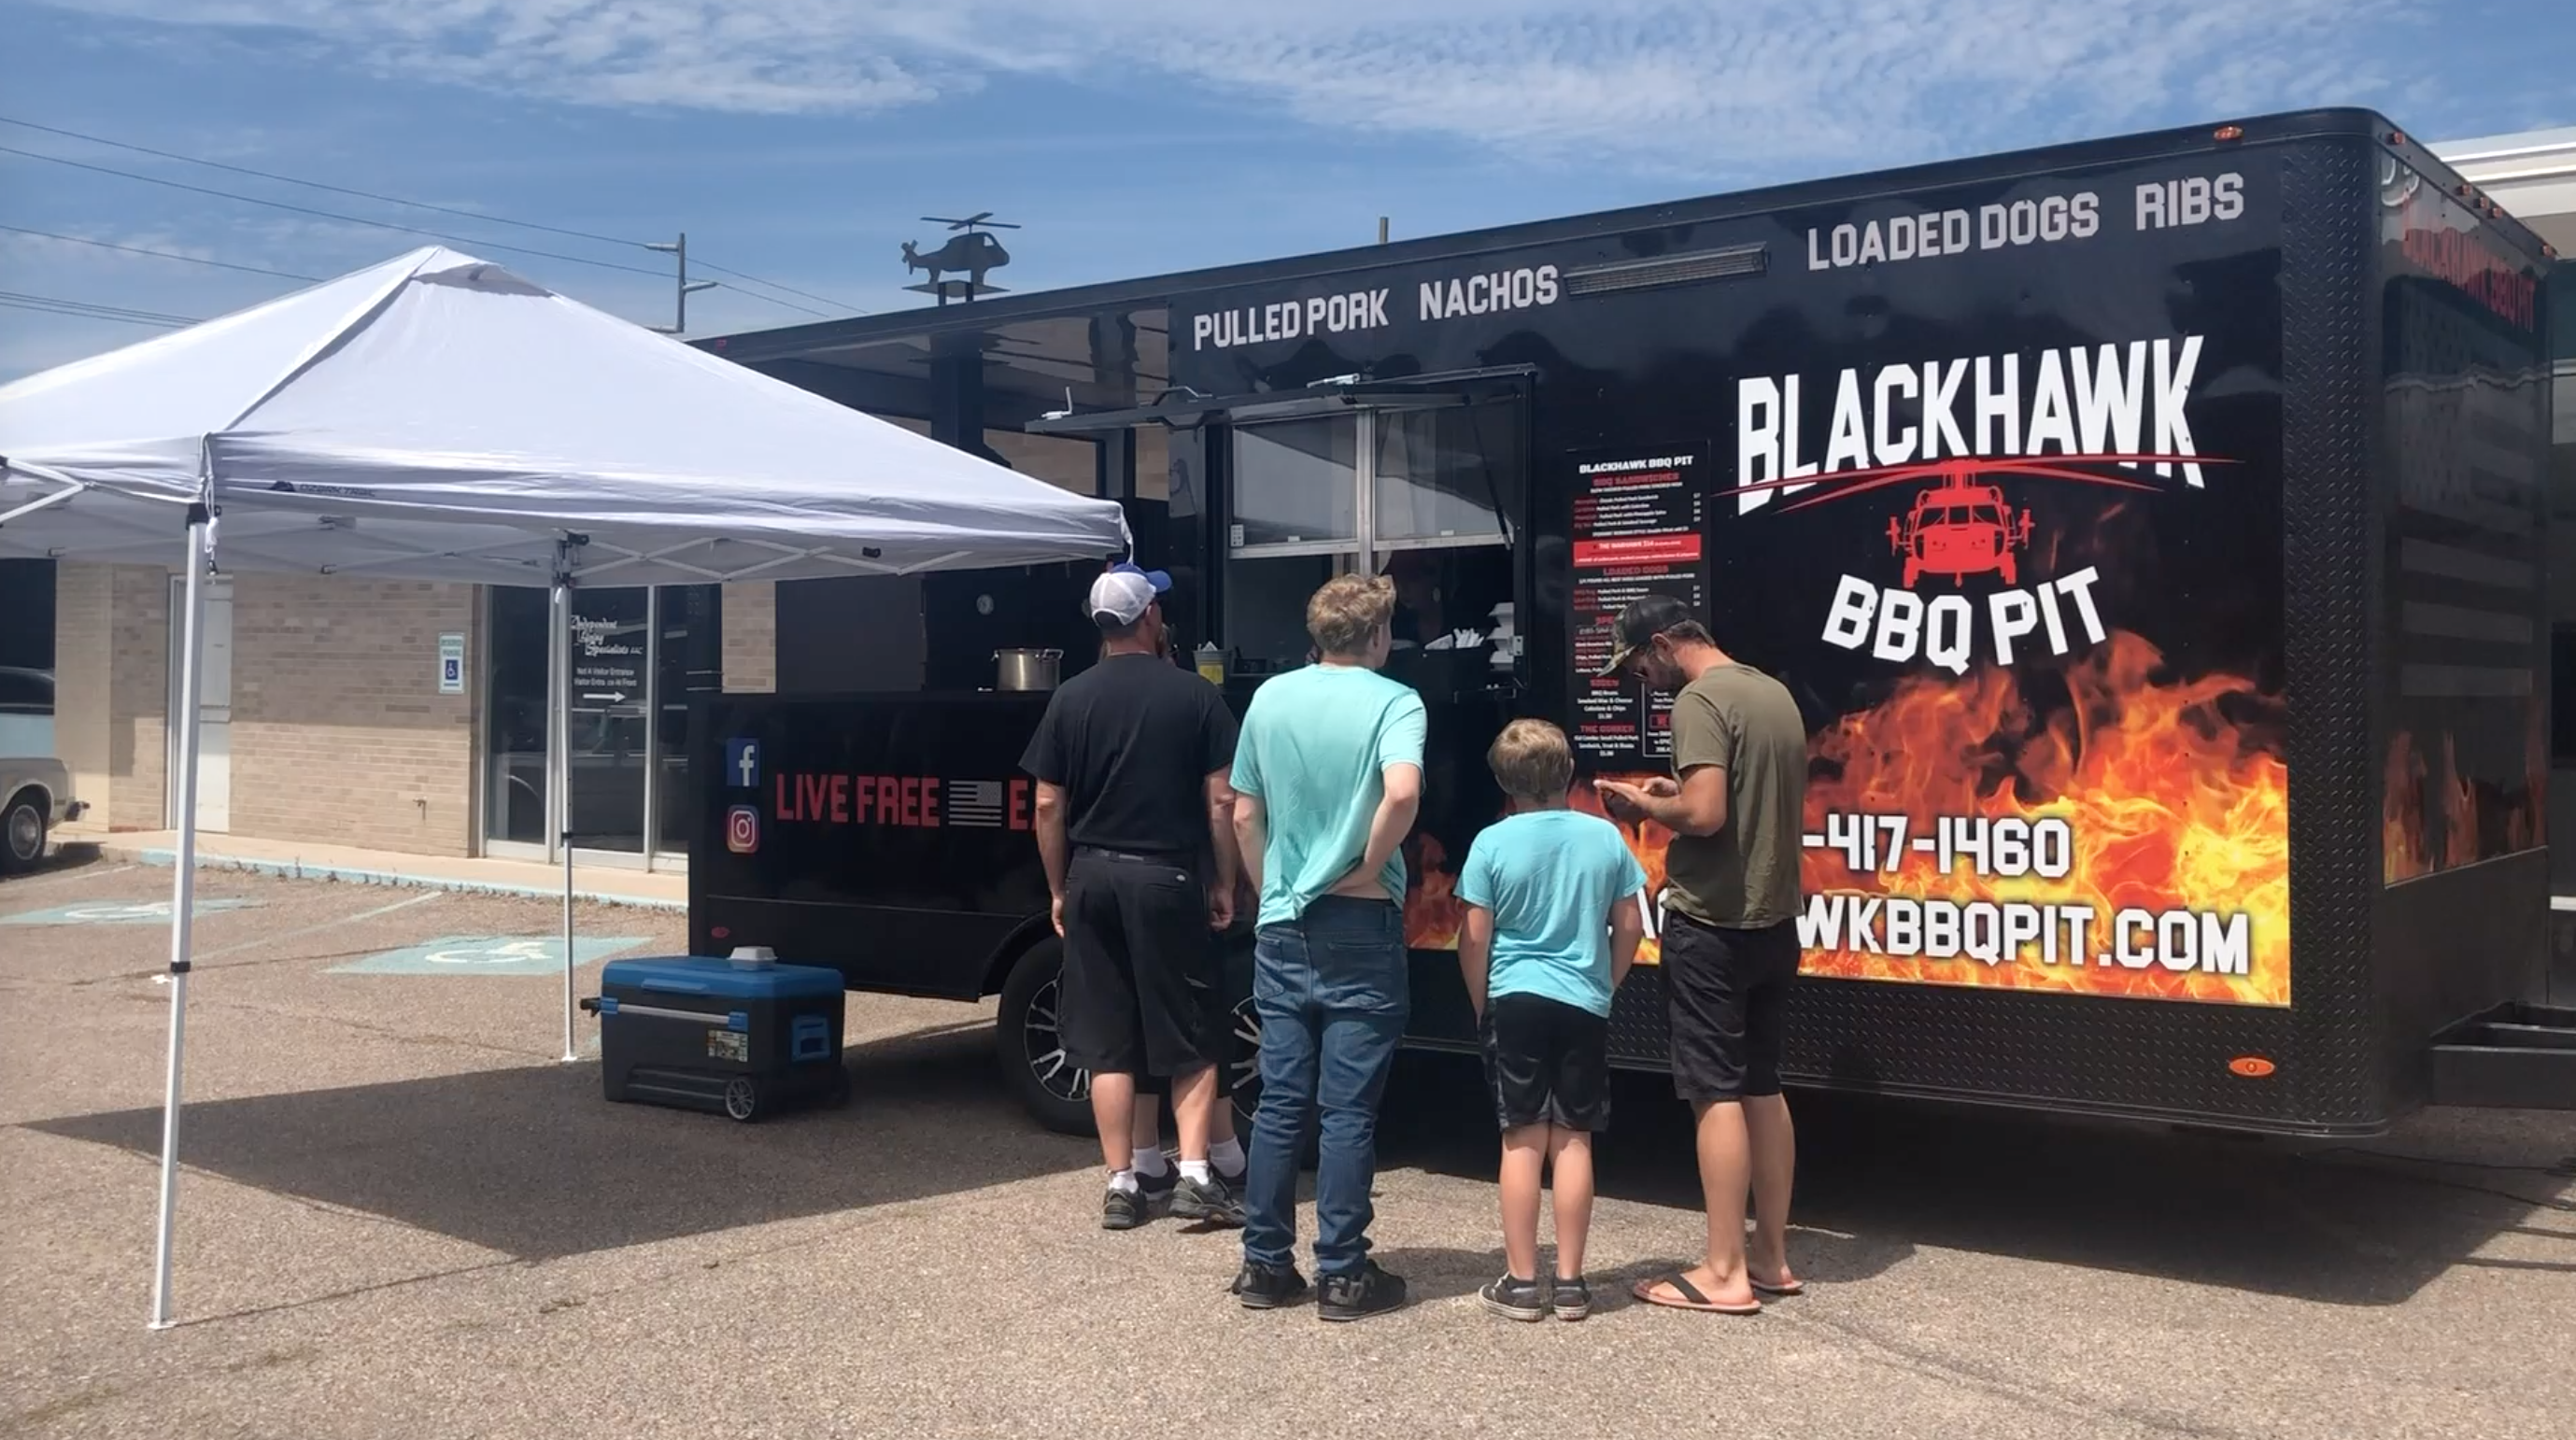 blackhawk bbq pit truck serves customers